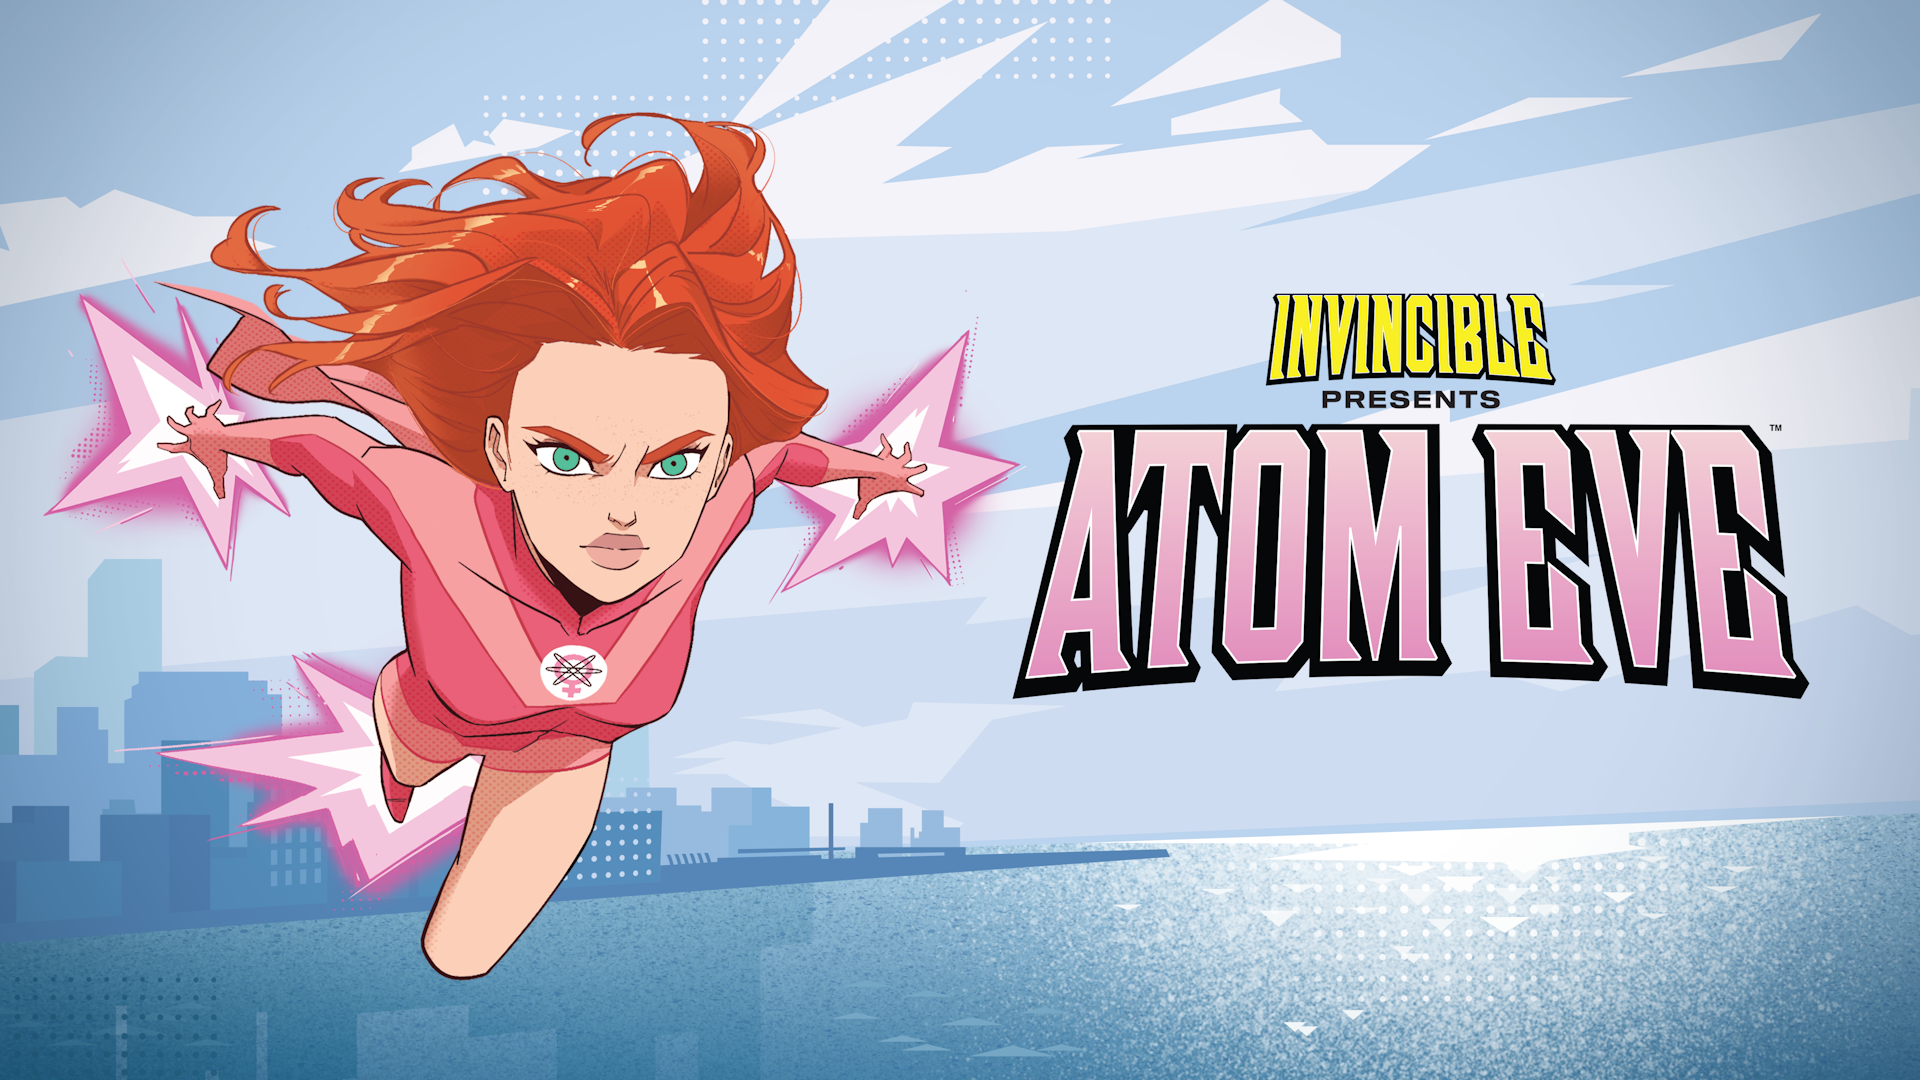 ビデオゲーム『Invincible Presents: Atom Eve』のキーアート